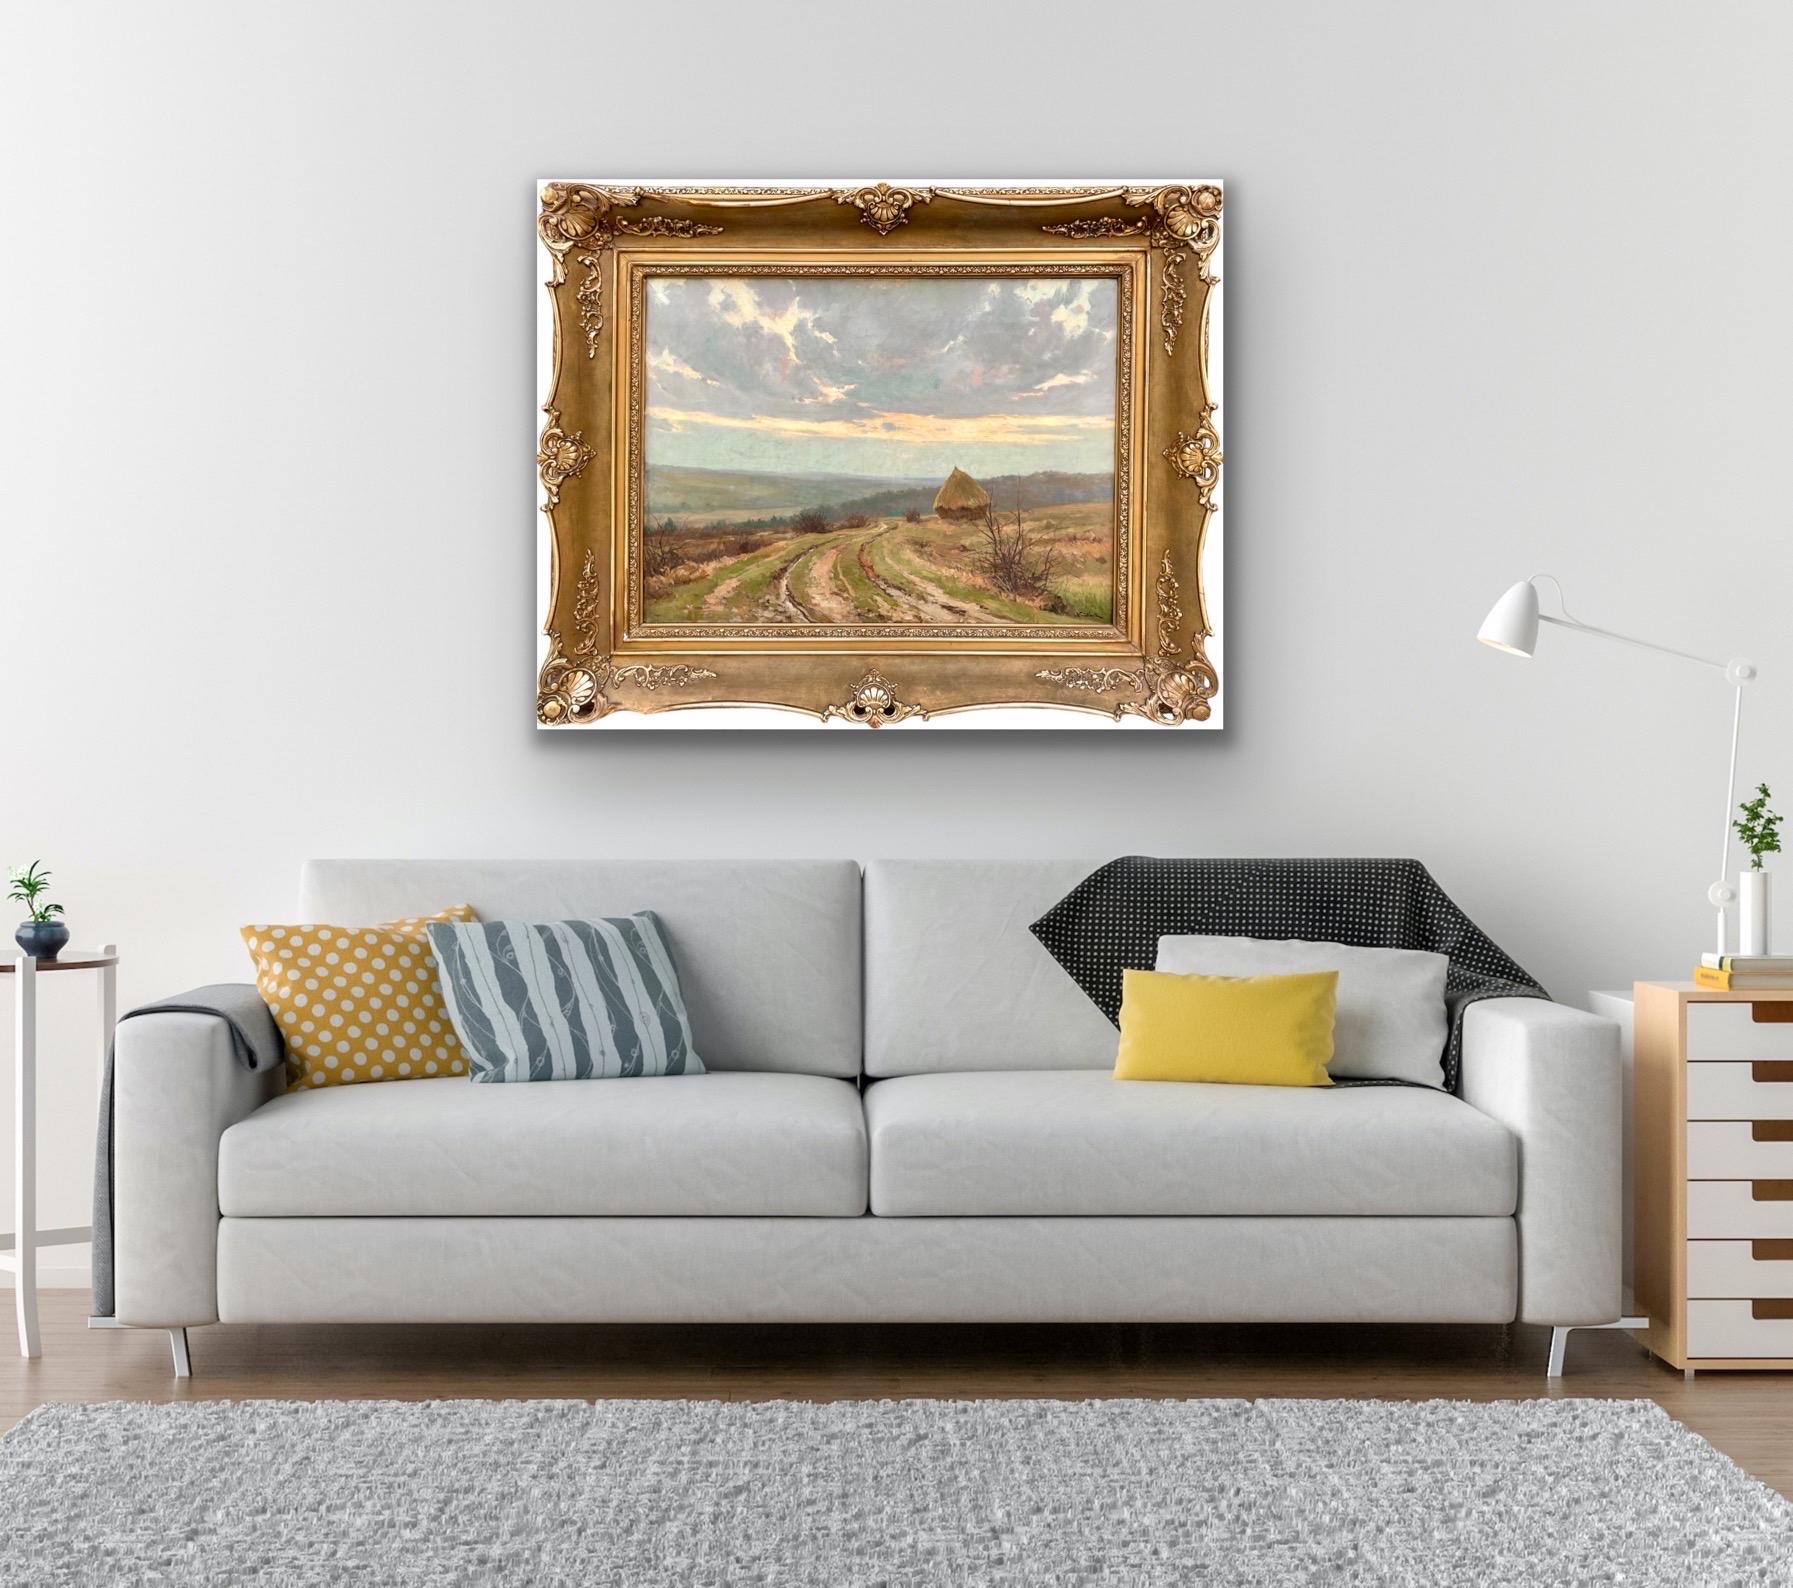 Large 19th century romantic painting - Hay Harvest - Une meule dans un paysage 4